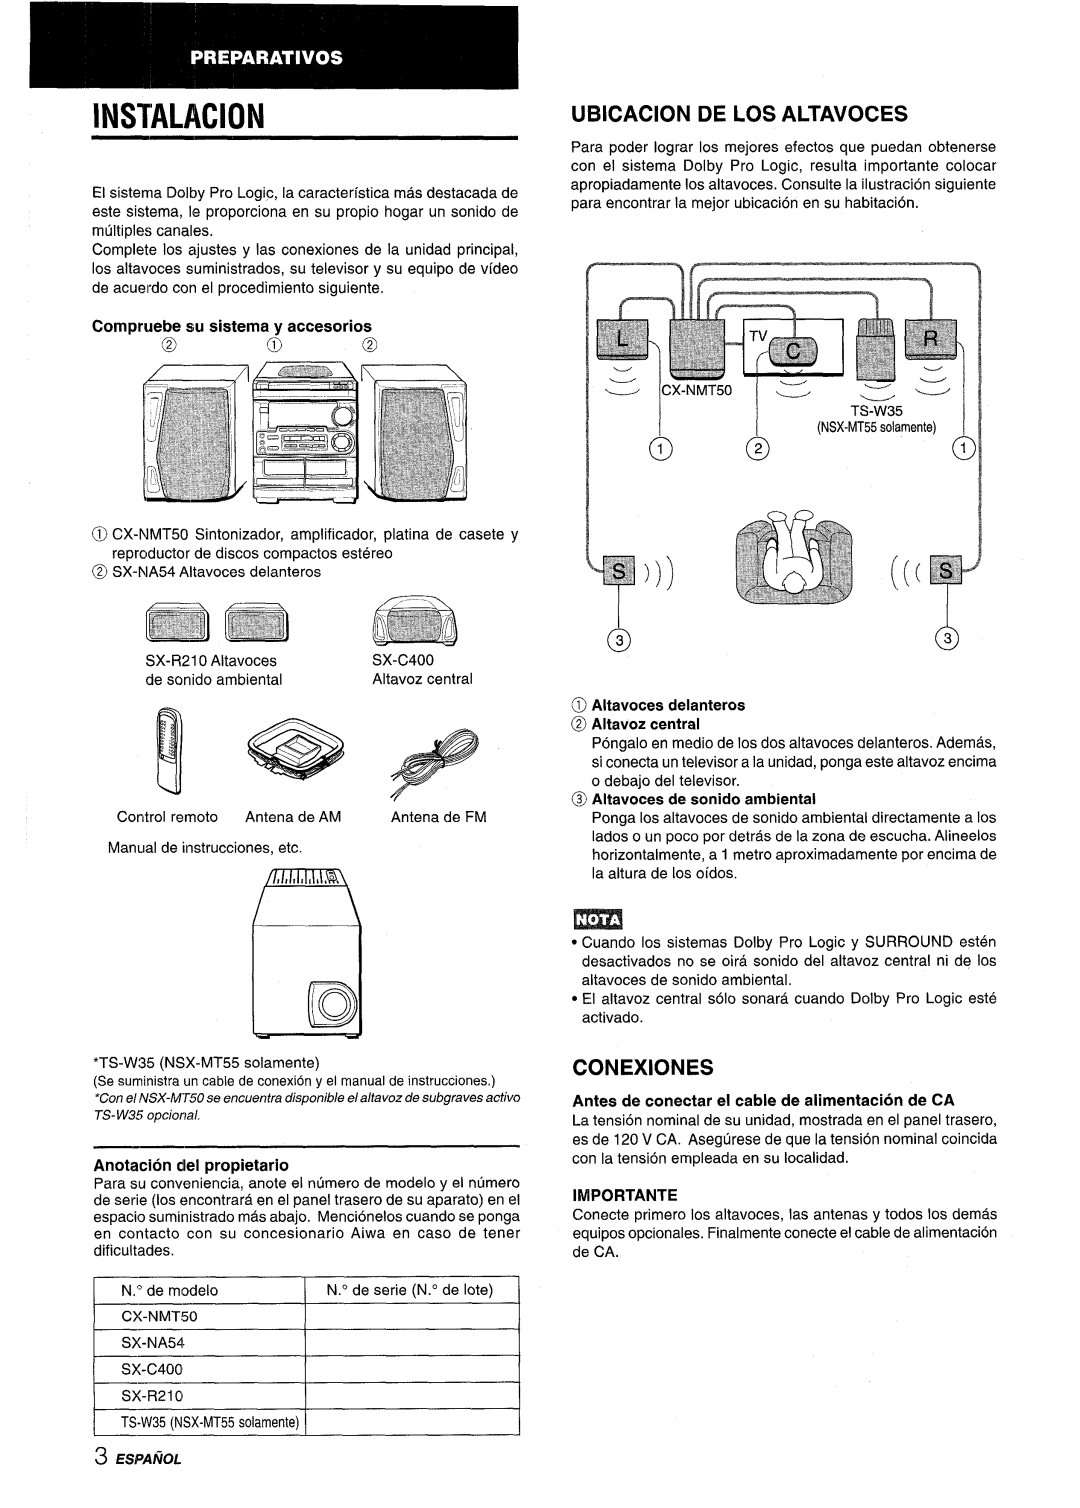 Aiwa CX-NMT50 manual Instalacion, Ubicacion De Los Altavoces, Conexiones, Anotacion del propietario, Importante 